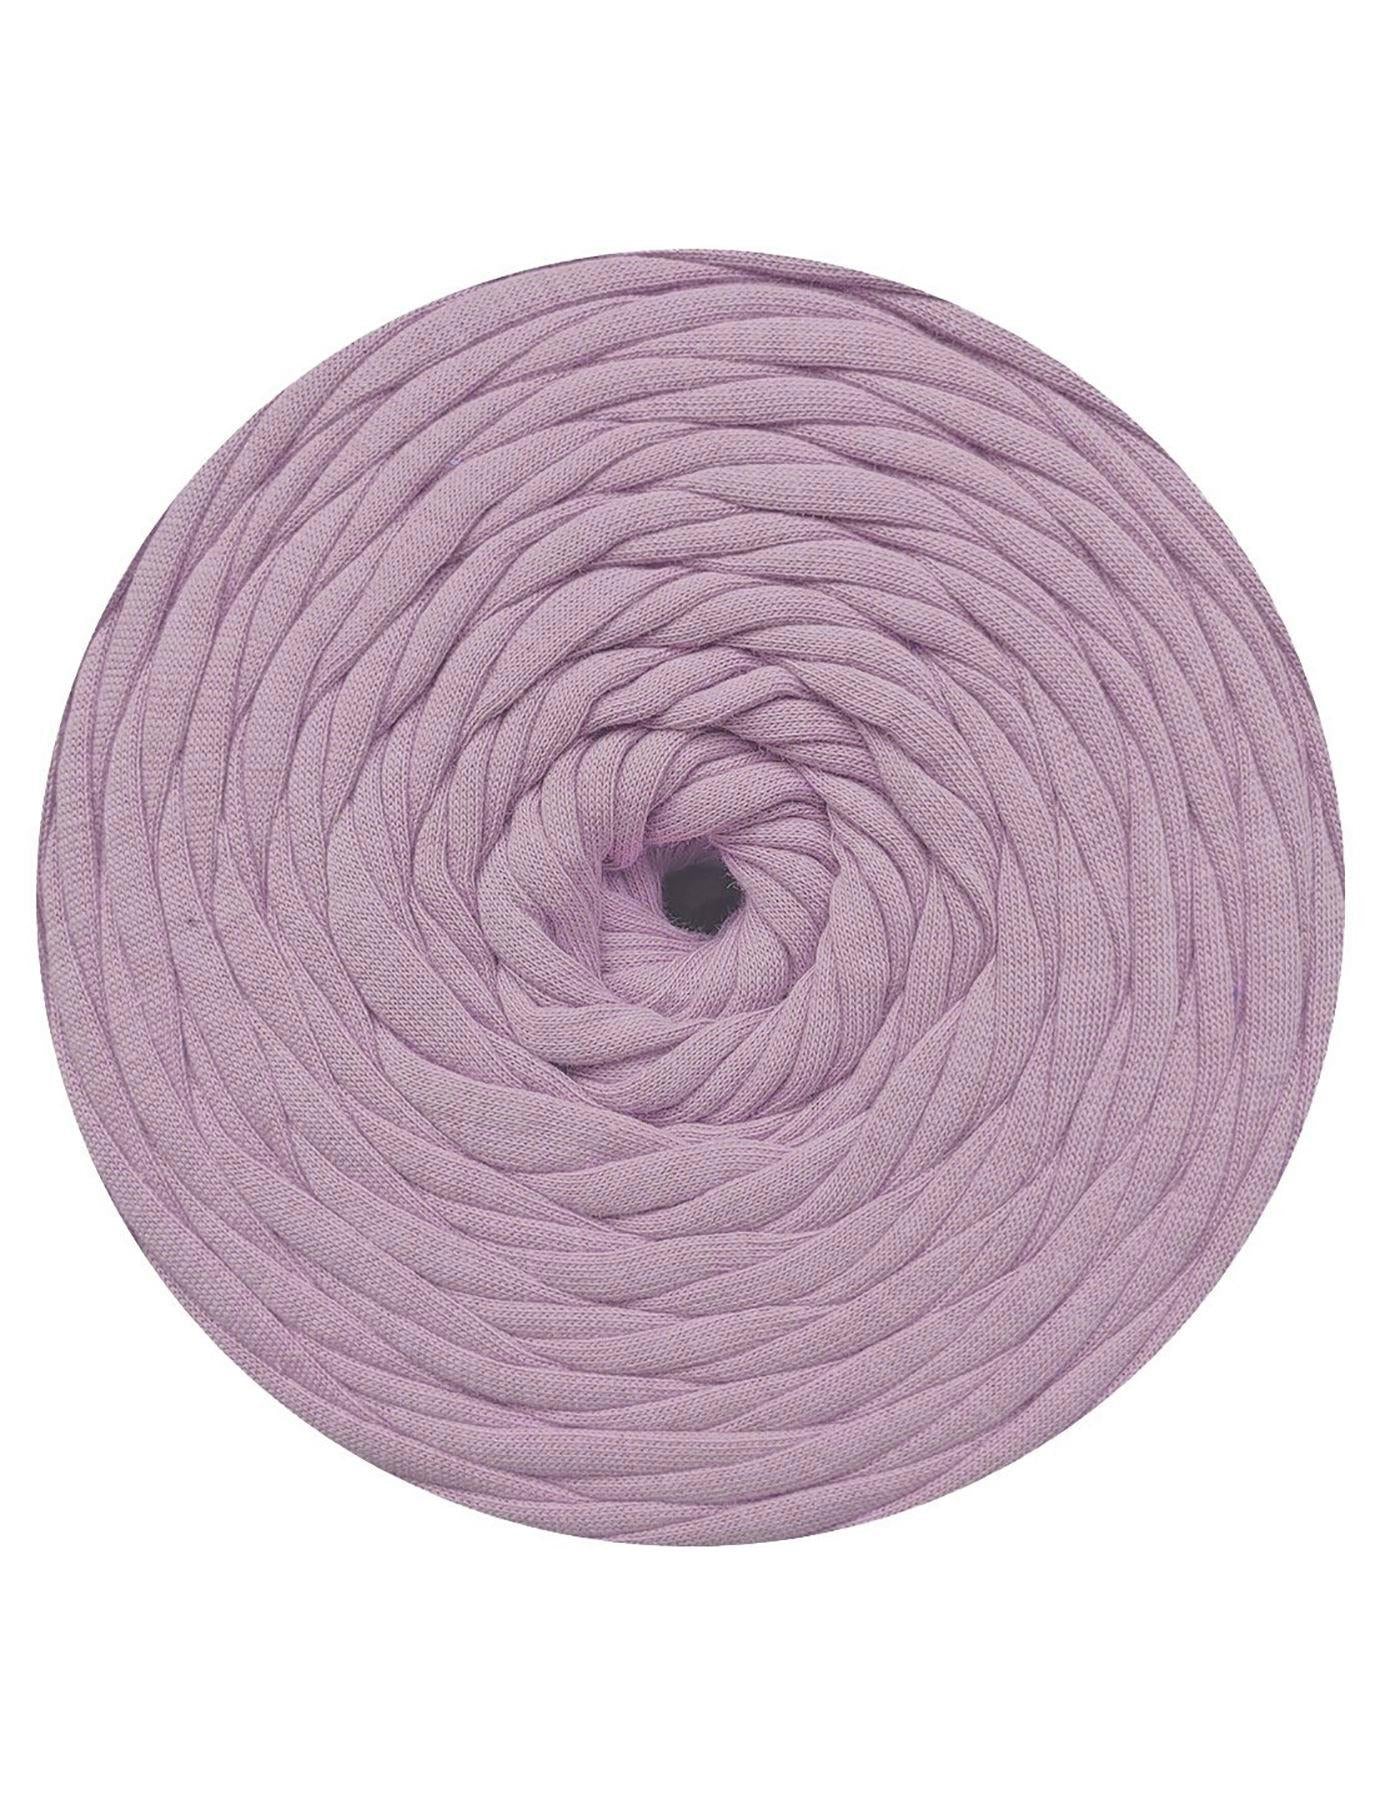 Muted lavendar purple t-shirt yarn by Rescue Yarn (100-120m)